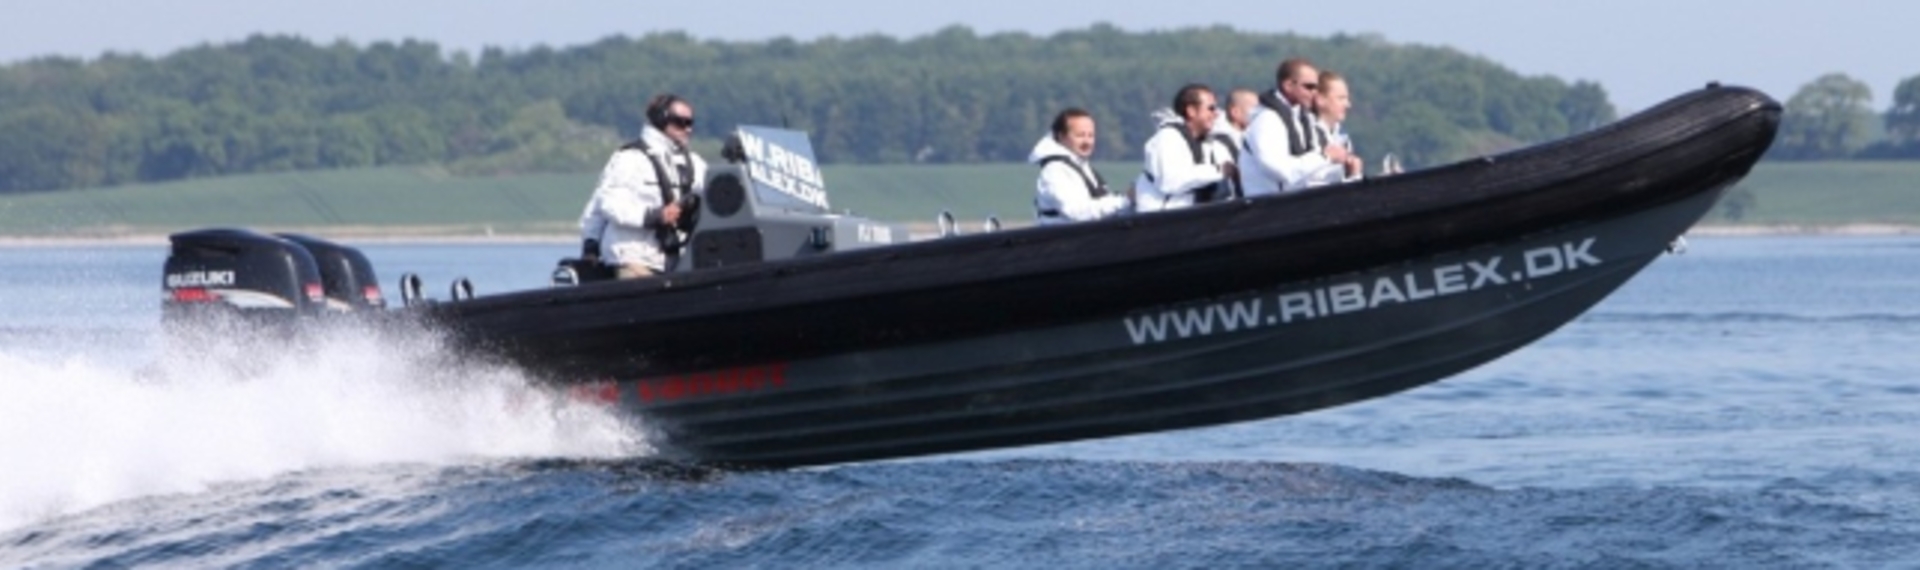 RIB - power boat racing 